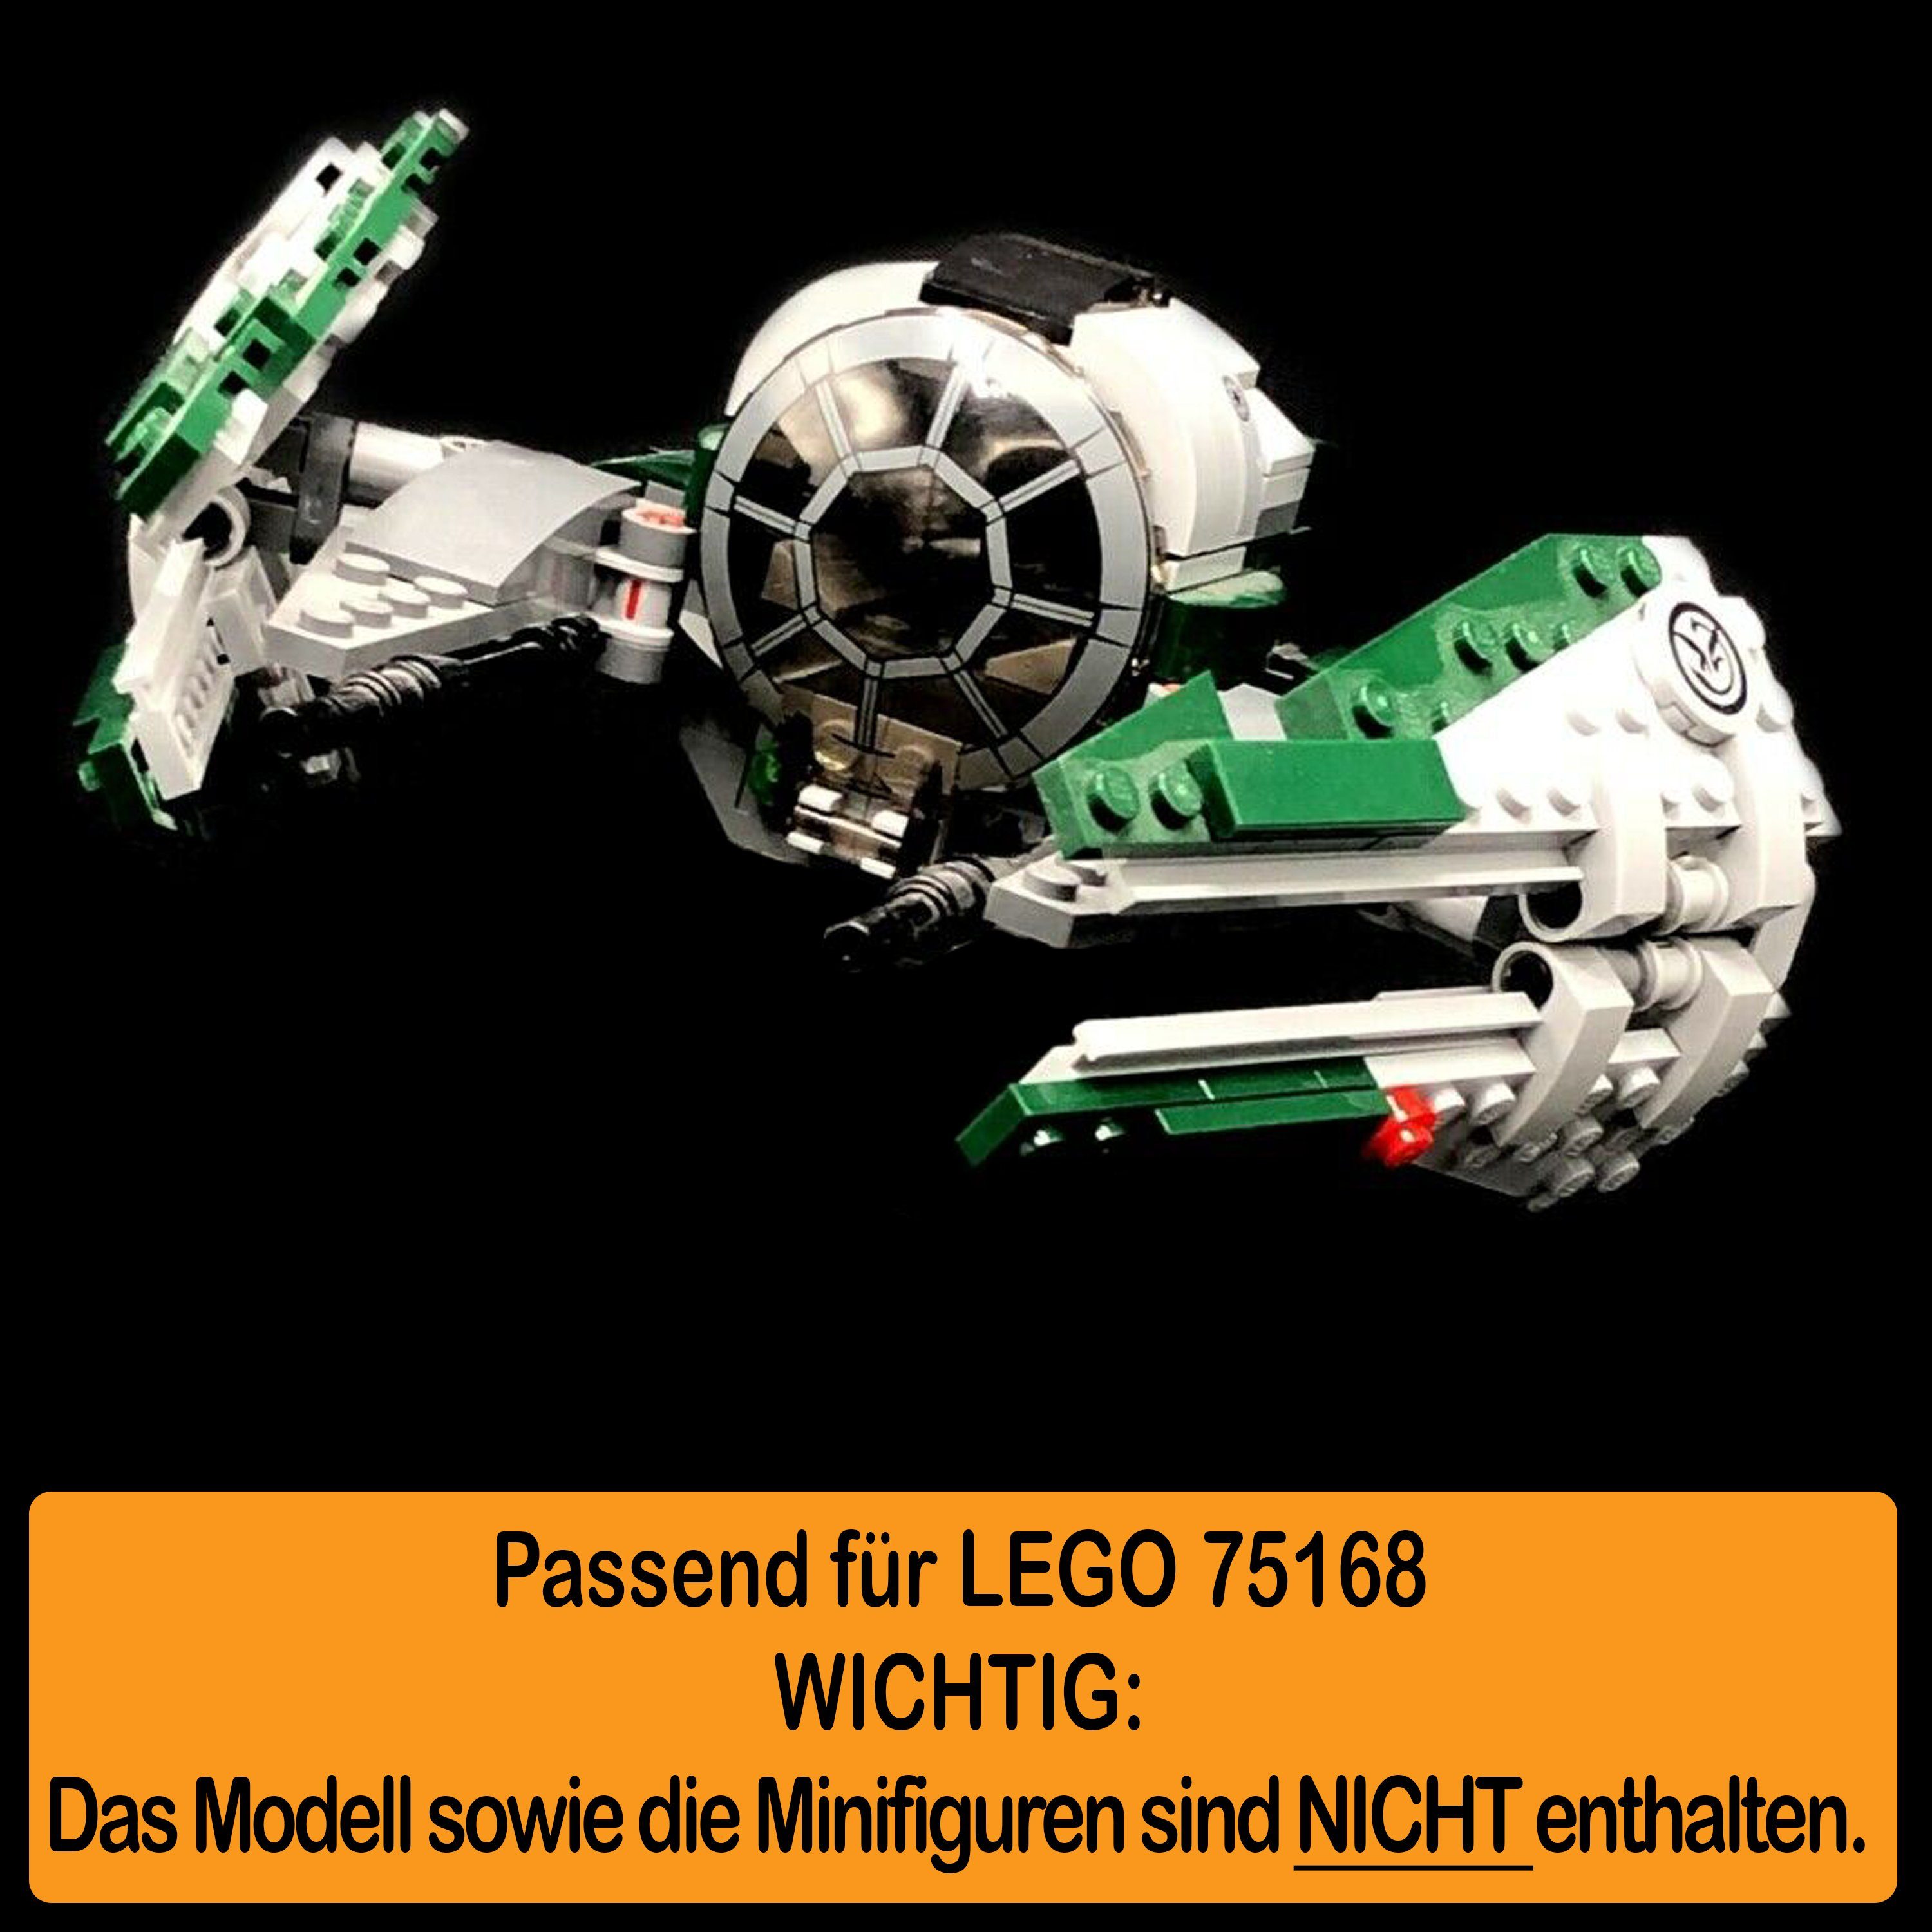 selbst Germany für Starfighter 100% Display AREA17 zum Acryl Jedi in Positionen Made einstellbar, LEGO Stand und (verschiedene Standfuß zusammenbauen), 75168 Winkel Yoda's